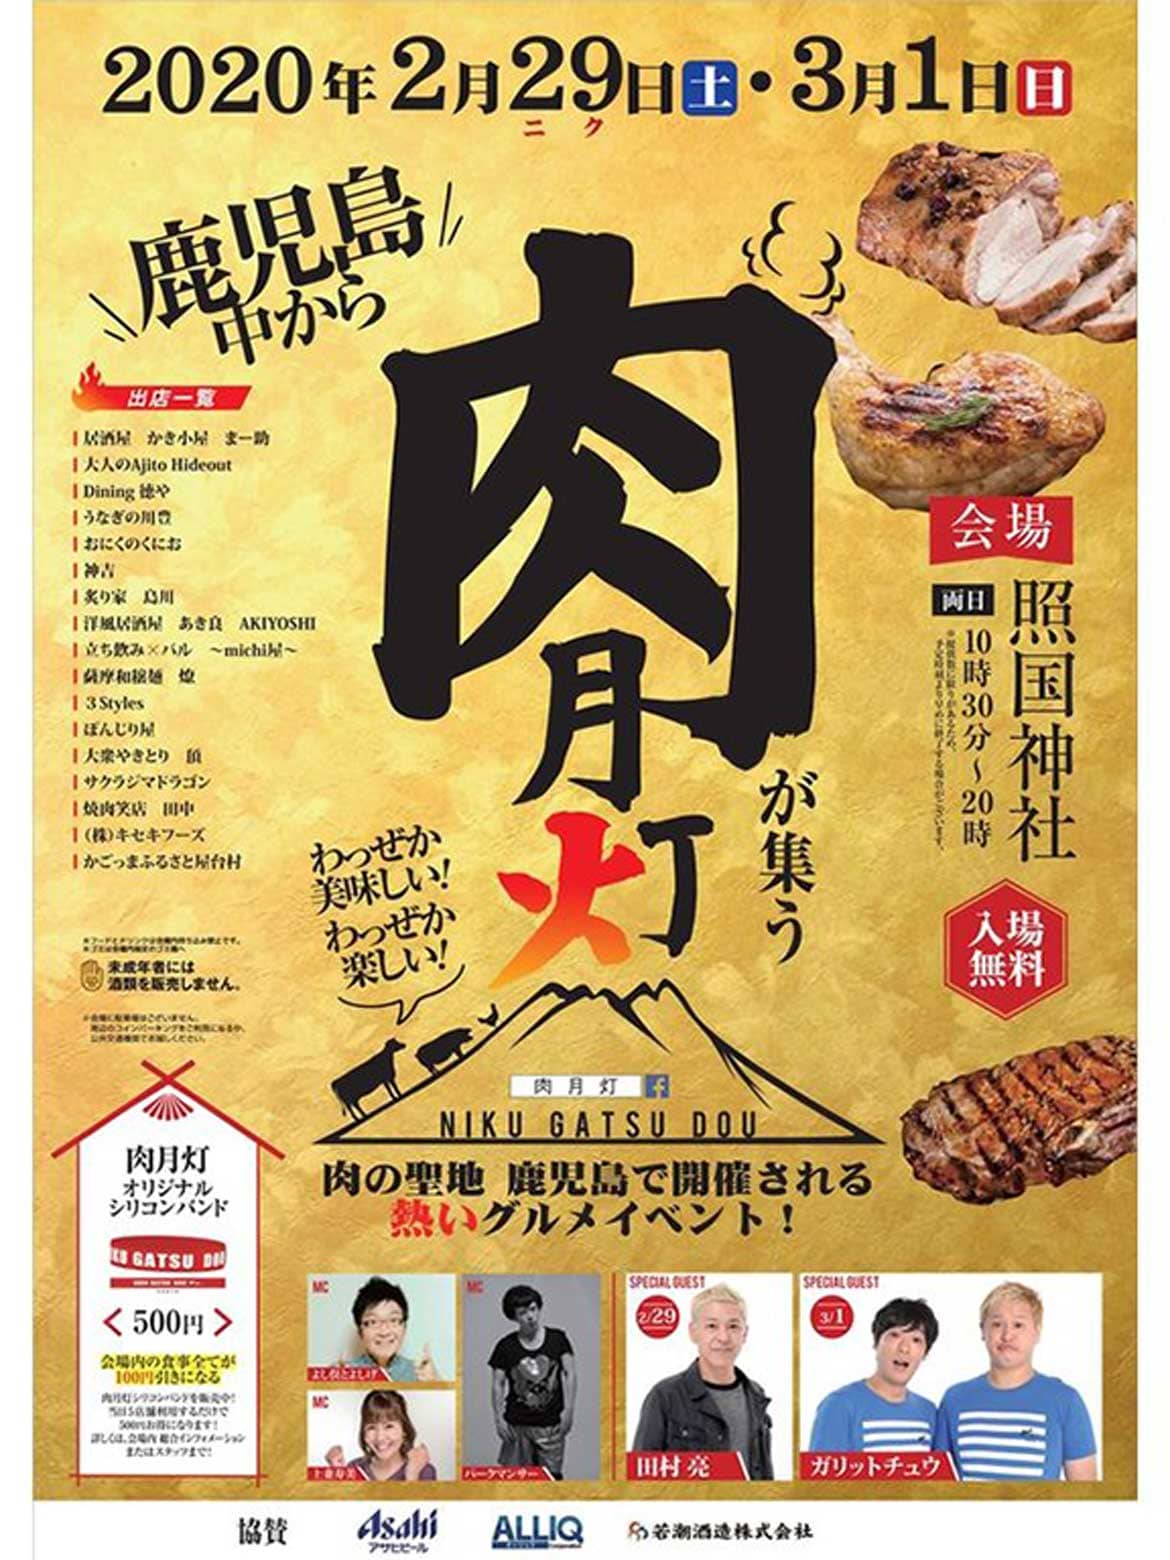 鹿児島の肉が集うグルメイベント「肉月灯2020」2/29(肉の日)より2日間開催!